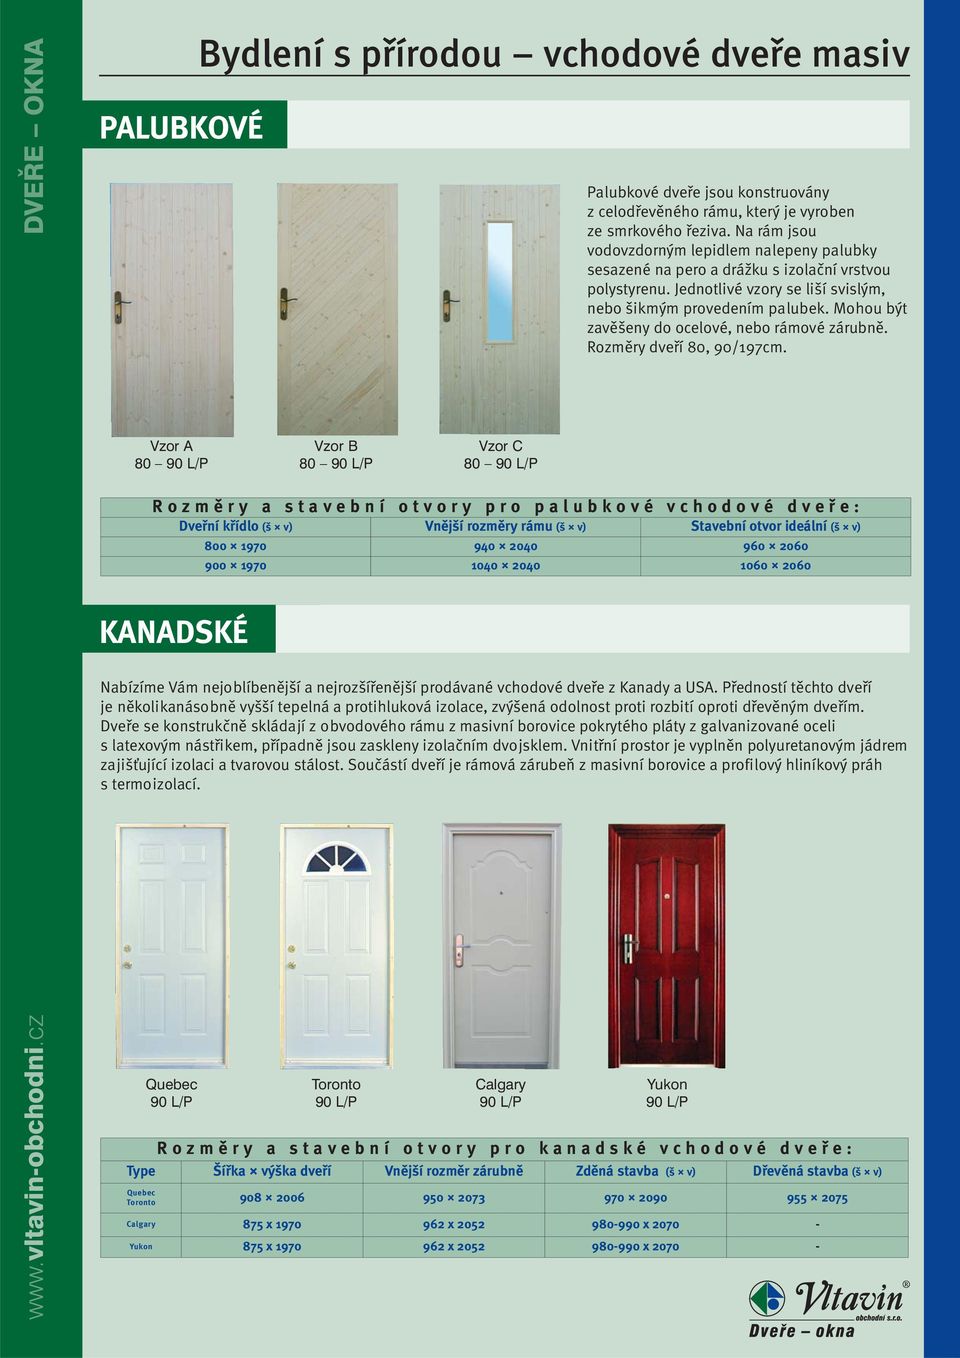 Kanady a USA. Předností těchto dveří je několikanásobně vyšší tepelná a protihluková izolace, zvýšená odolnost proti rozbití oproti dřevěným dveřím.